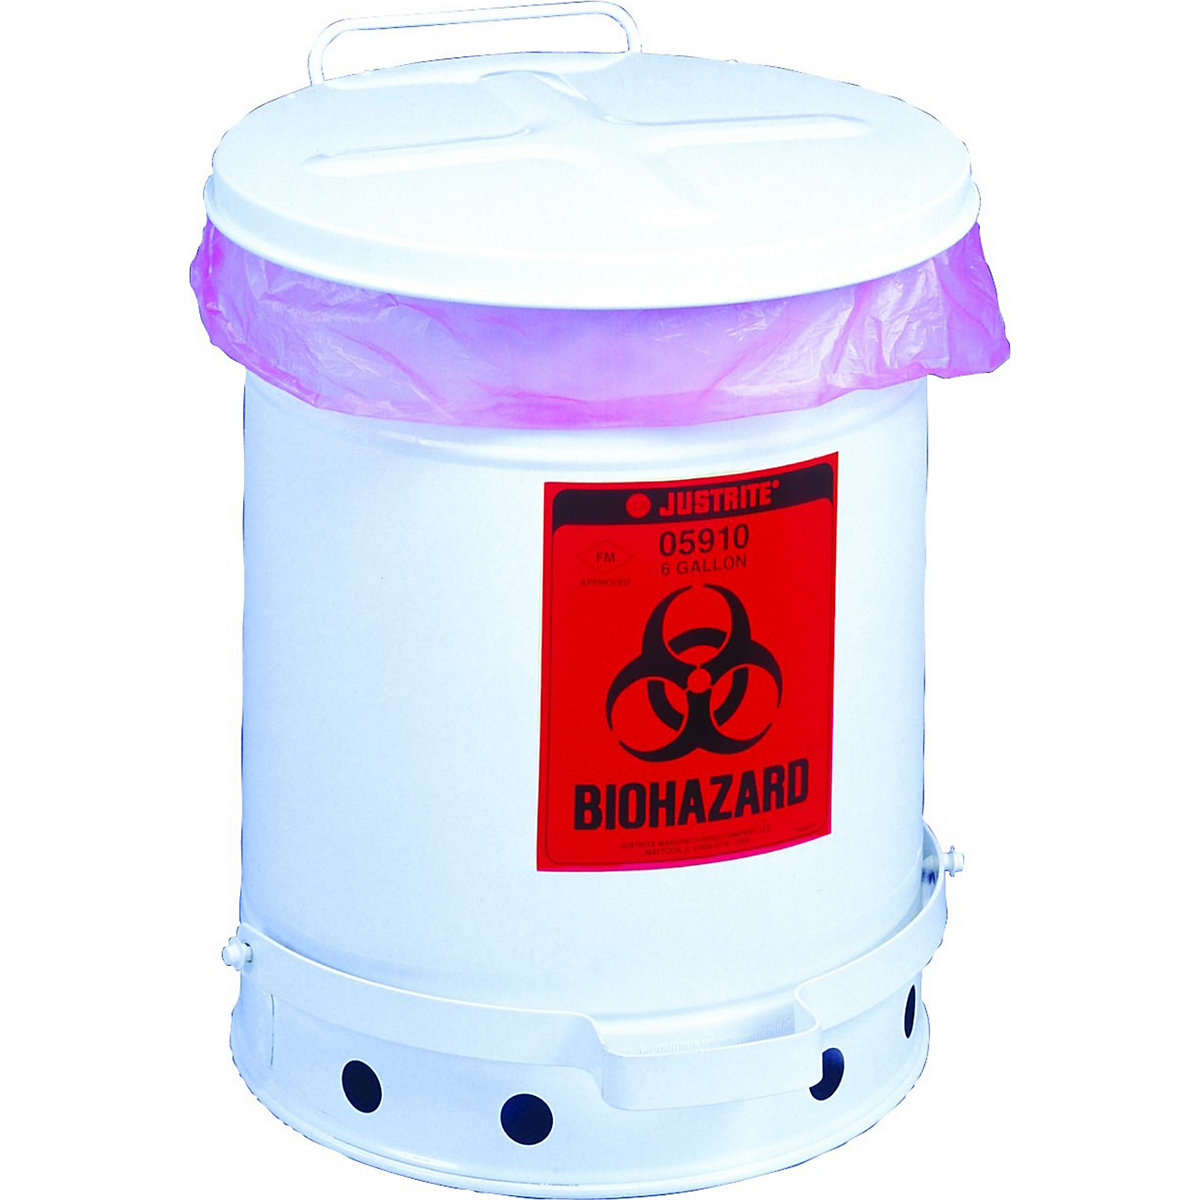 Stahlblech-Sicherheits-Entsorgungsbehälter für biogefährliche Abfälle Justrite, BIOHAZARD-Aufkleber, Volumen 34 l, mit Pedal, weiß, ab 5 Stk-1